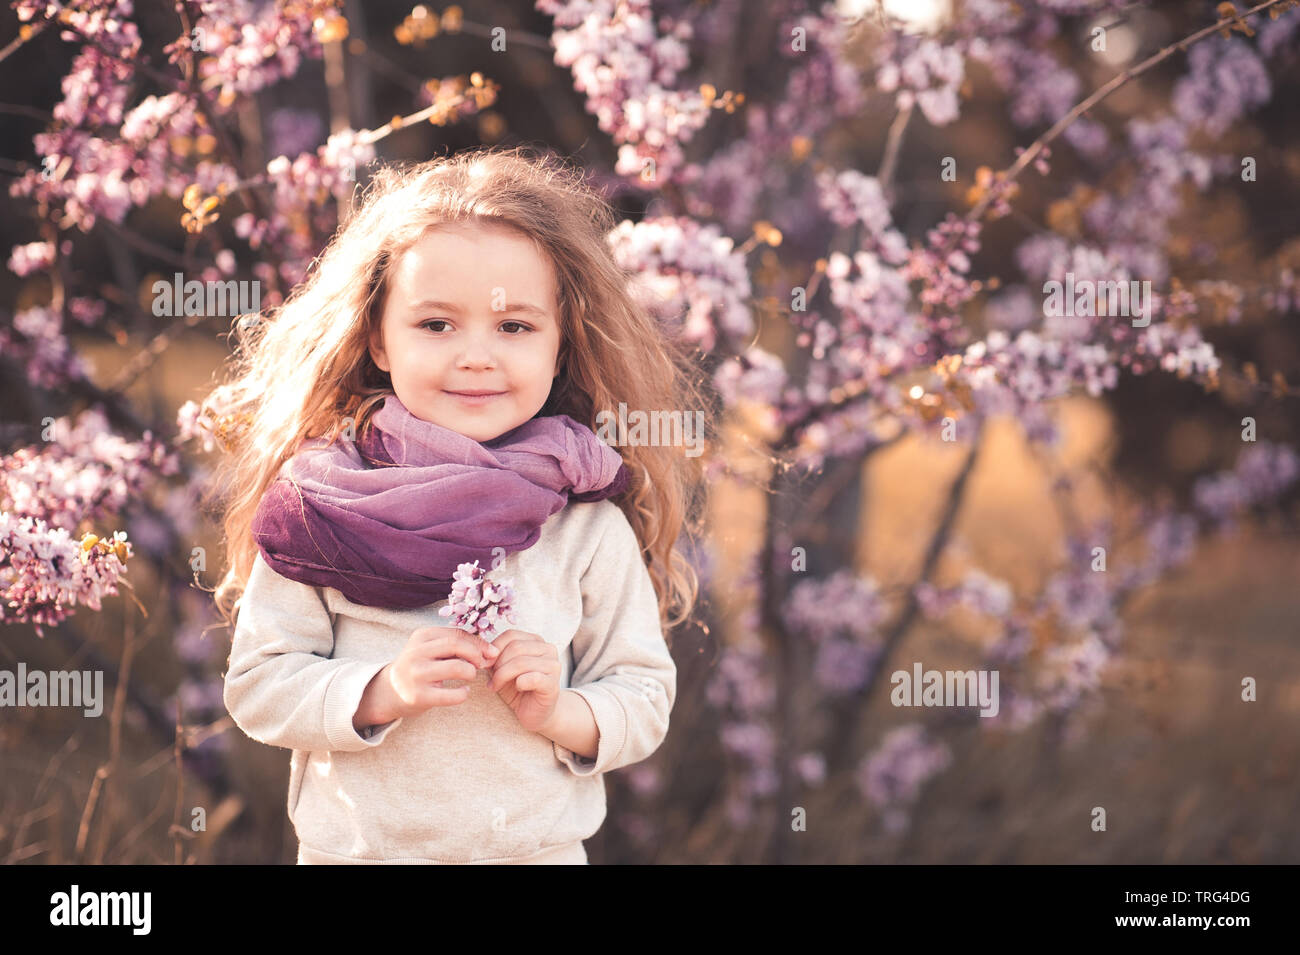 Smiling girl enfant 4-5 ans holding flower portant foulard violet et gris sweat élégant d'arbres en fleurs sur l'extérieur. En regardant la caméra. Childhoo Banque D'Images